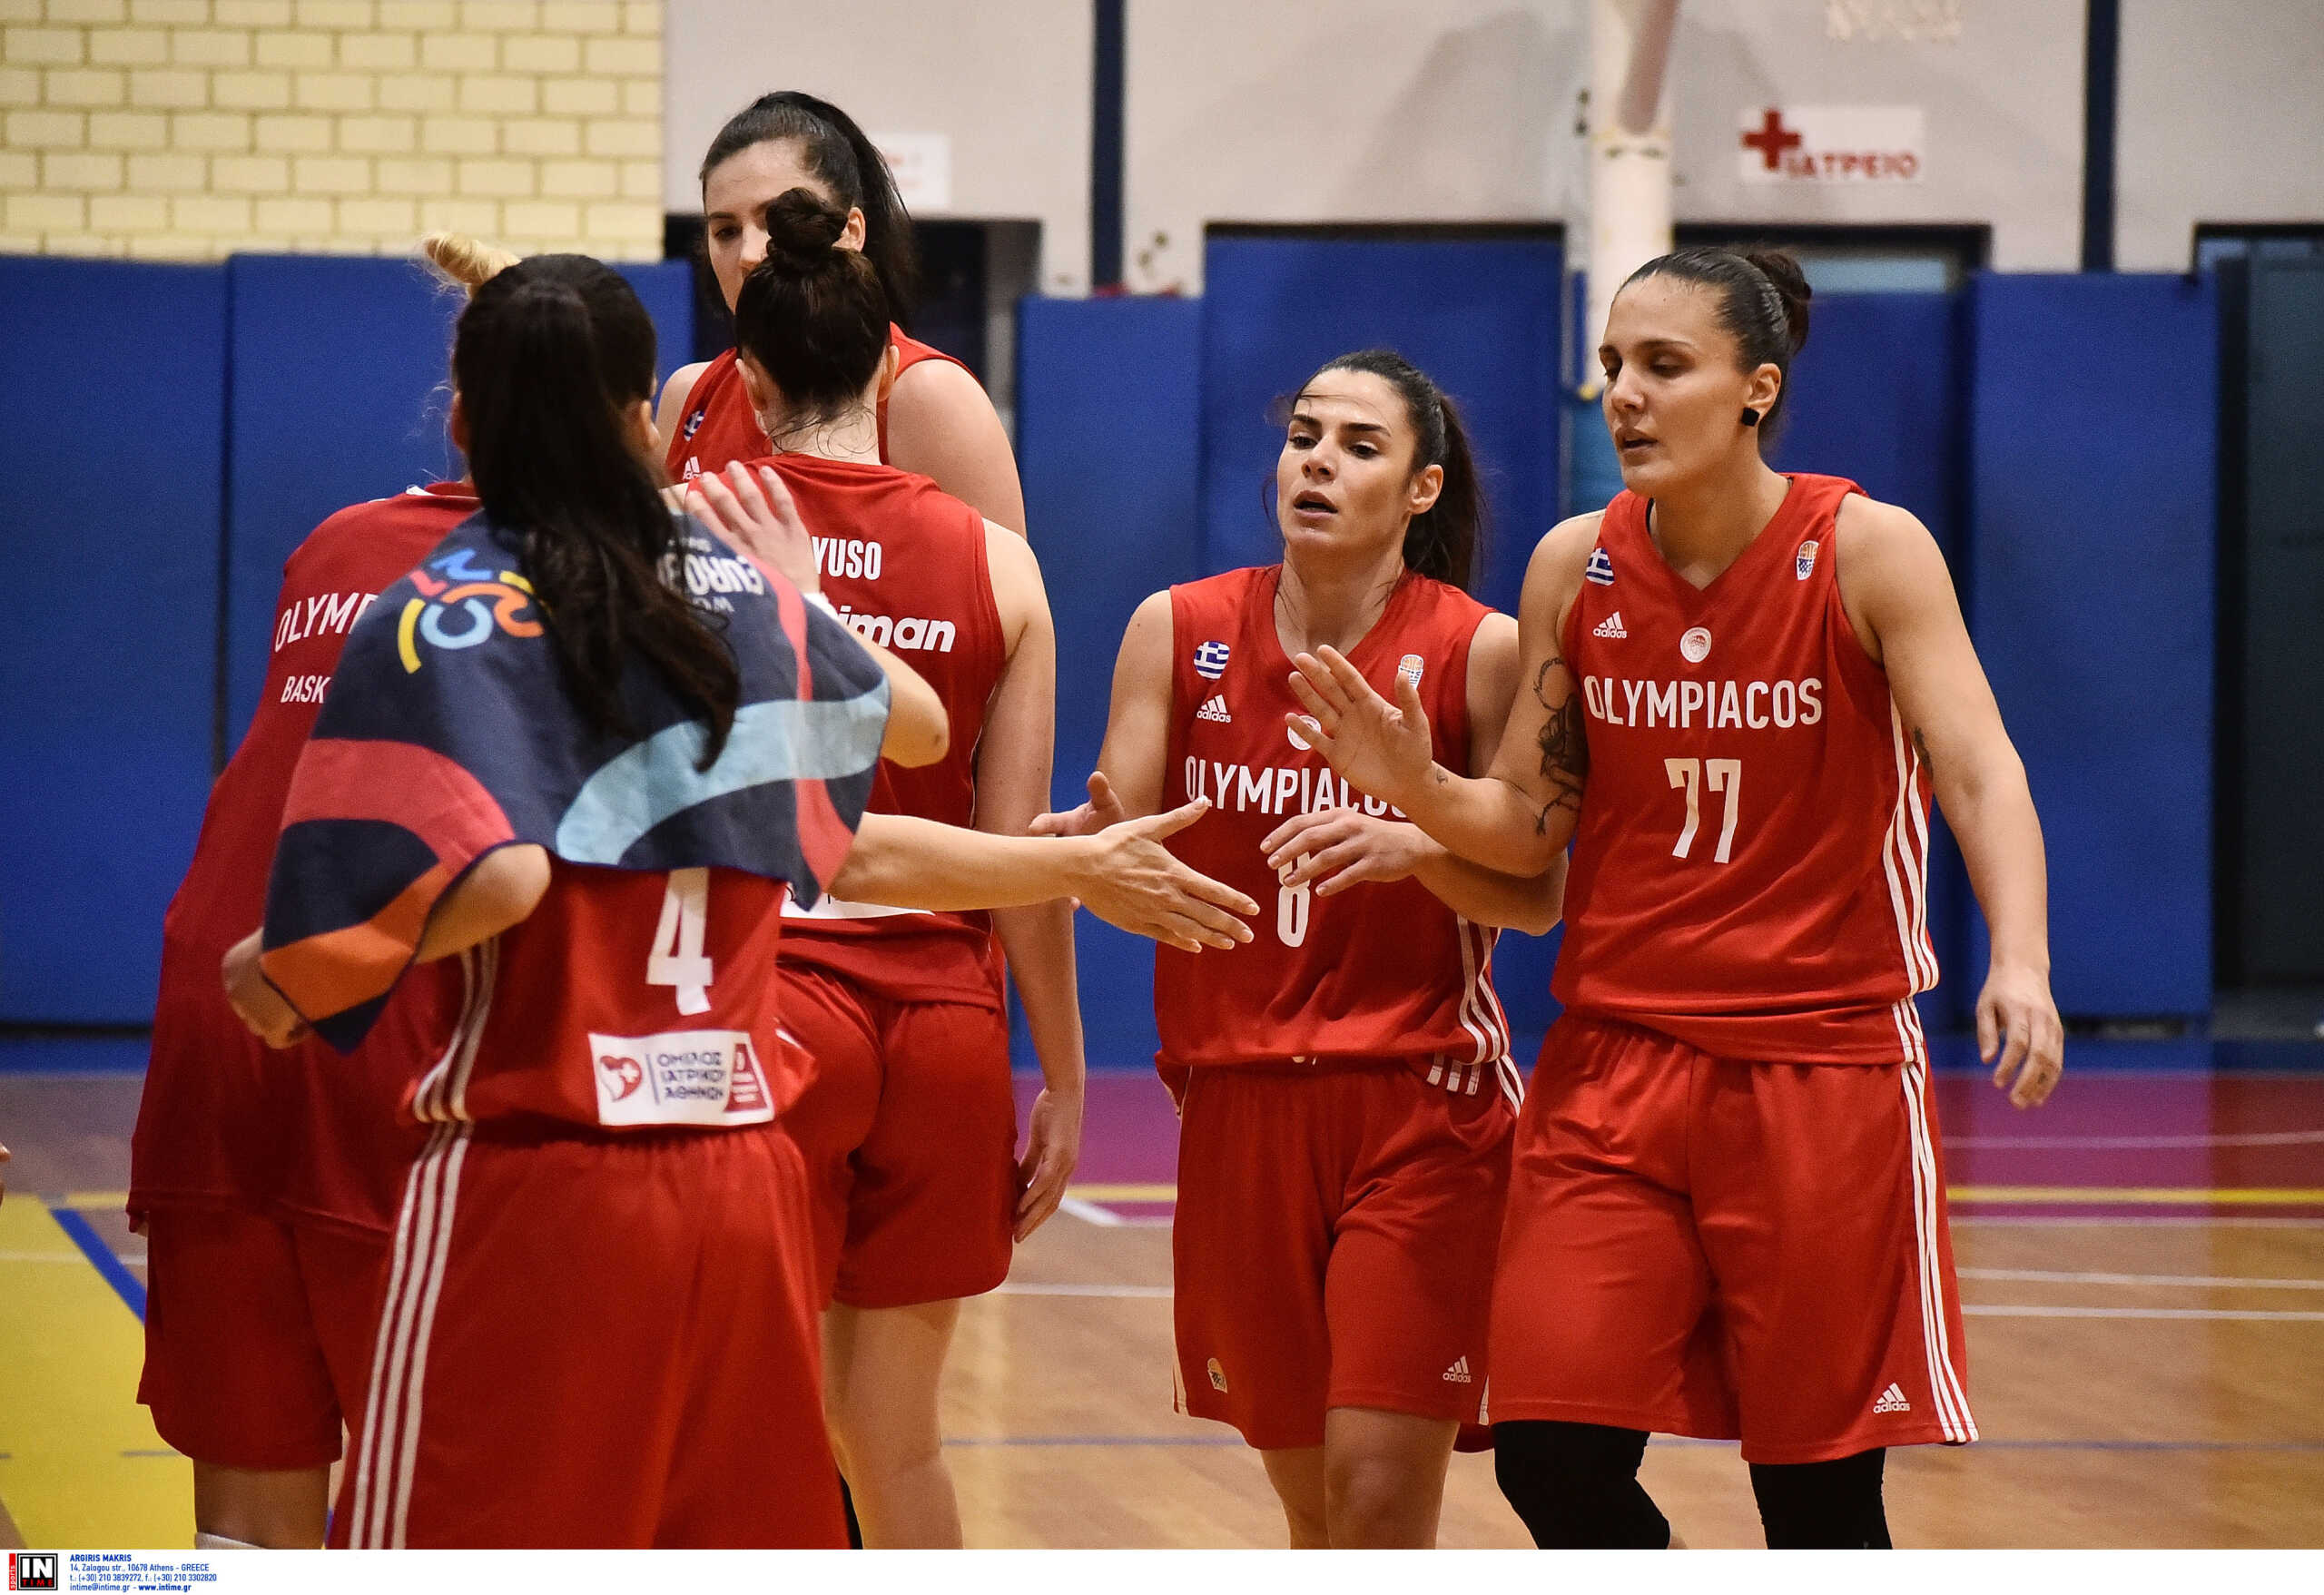 Ο Ολυμπιακός νίκησε τον ΠΑΟΚ με 91-35 στο μπάσκετ γυναικών